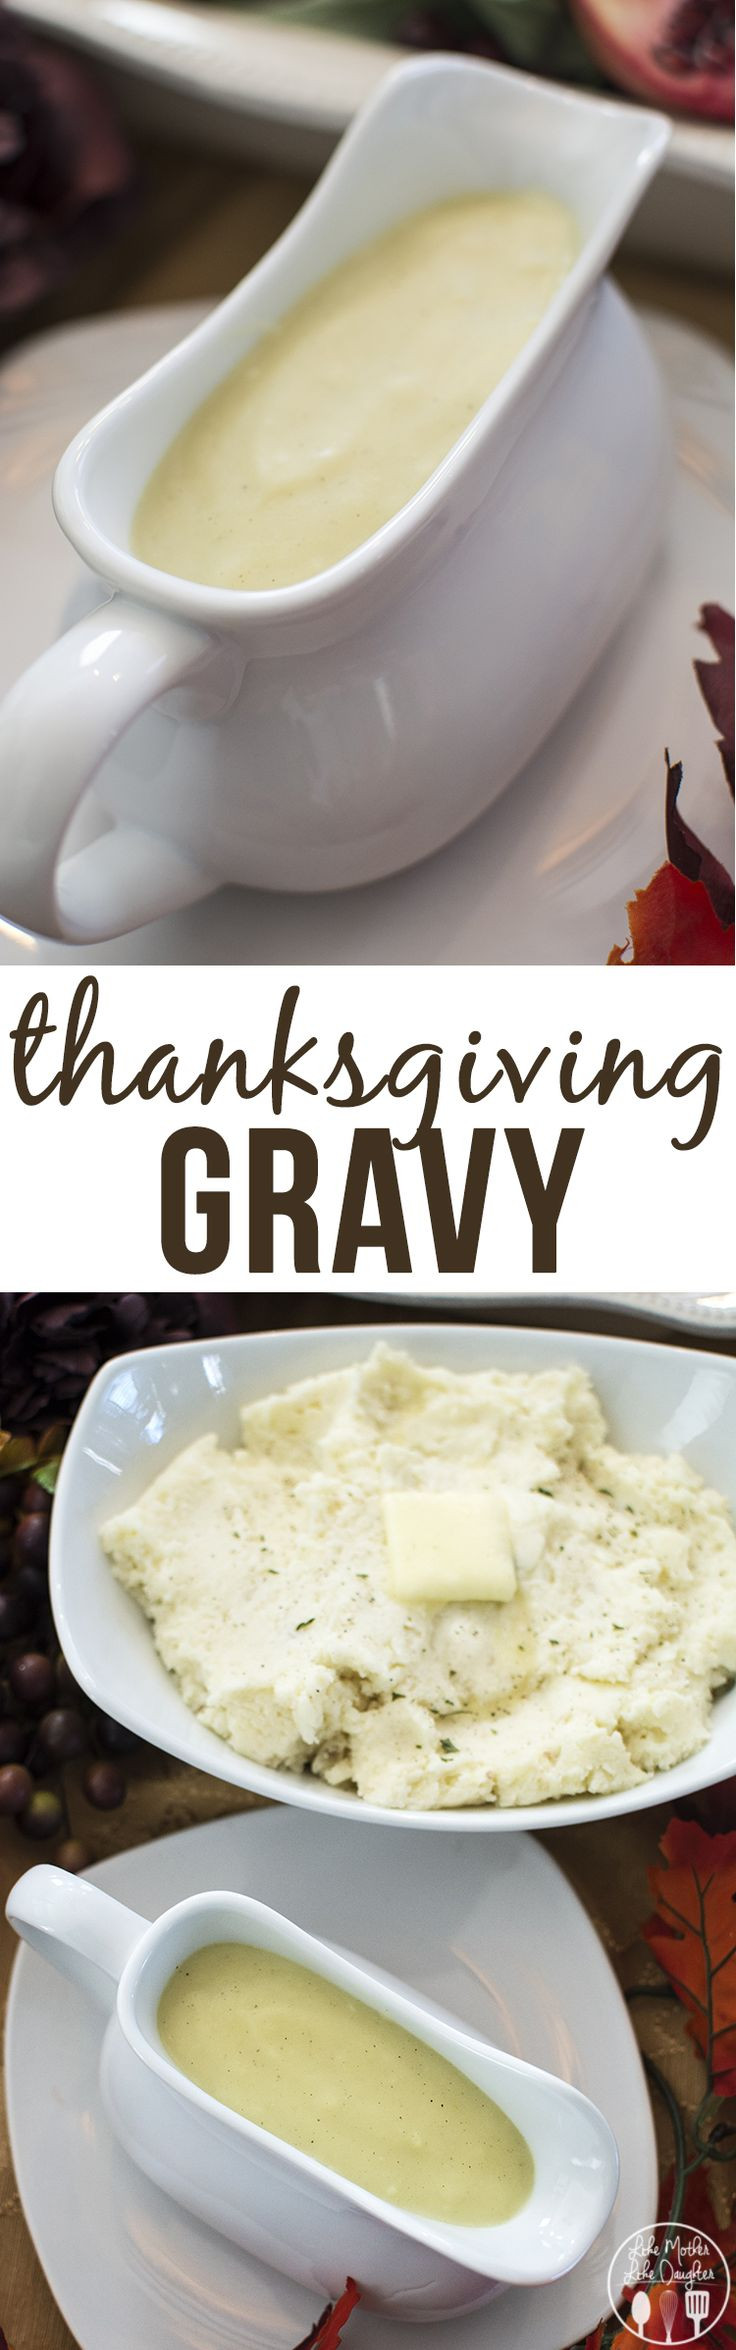 Thanksgiving Gravy Recipe
 Thanksgiving Gravy Recipe